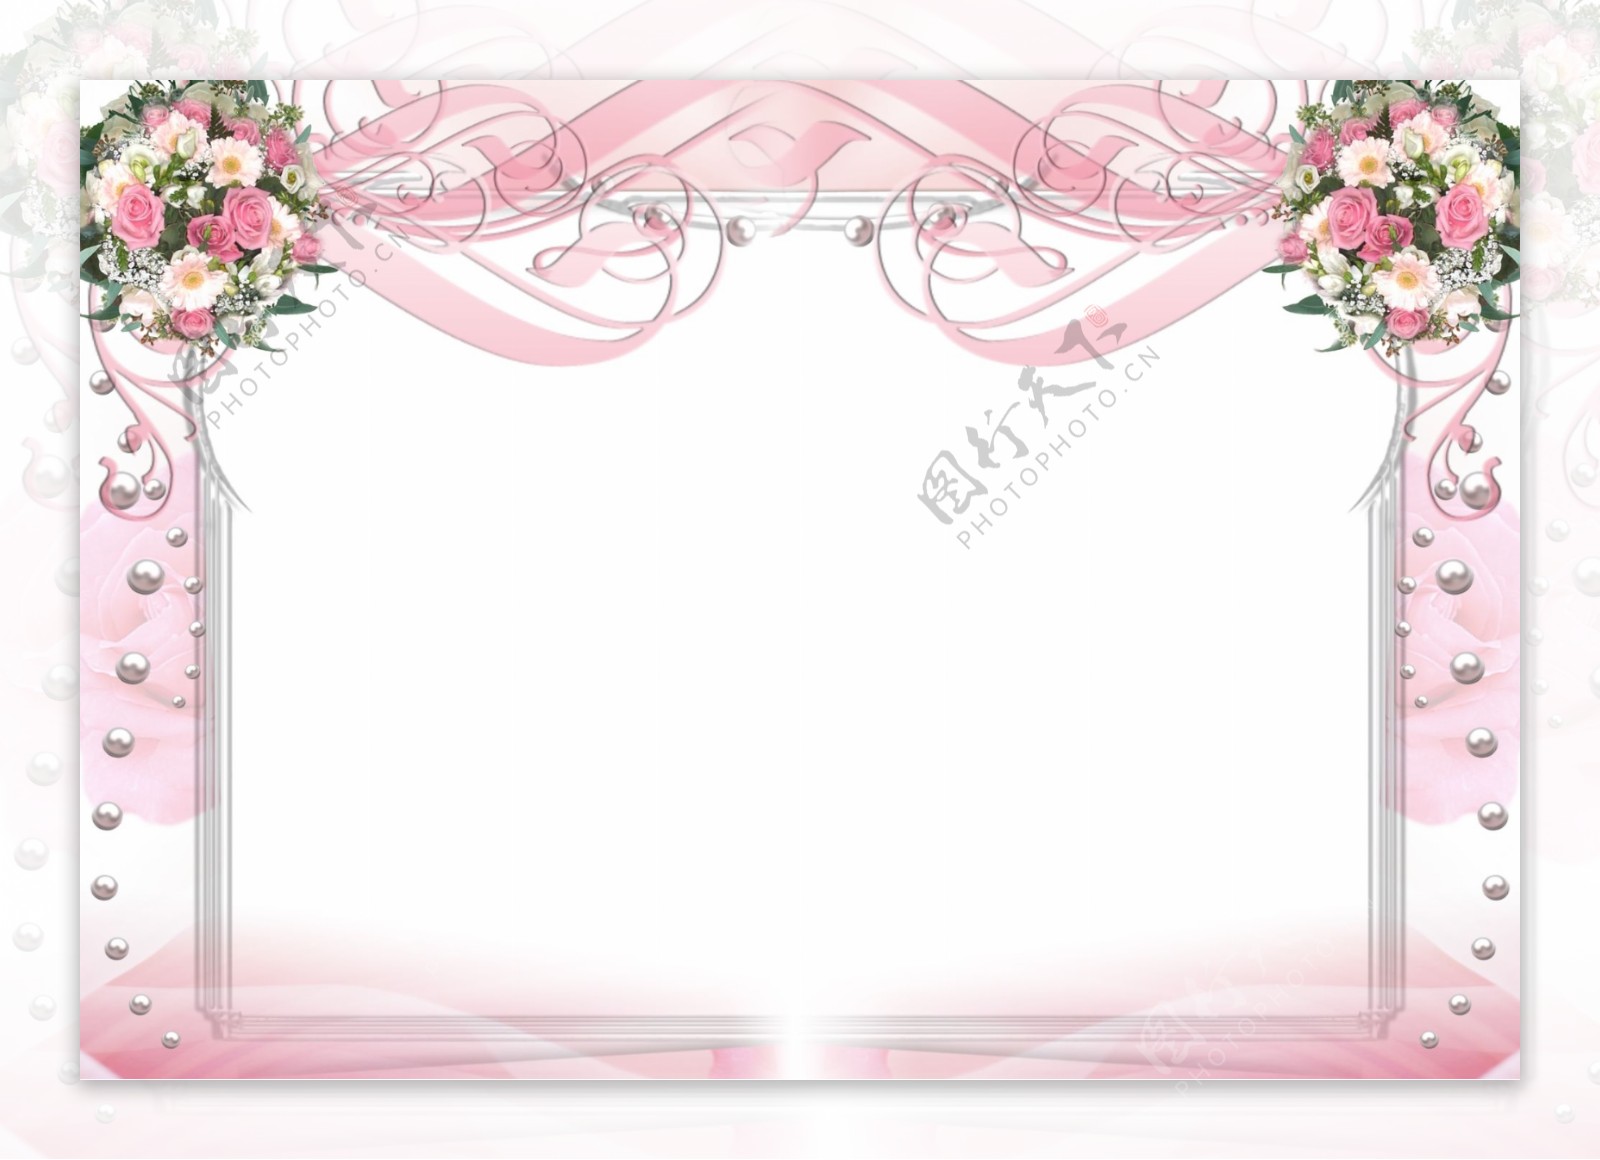 粉红色花纹相框